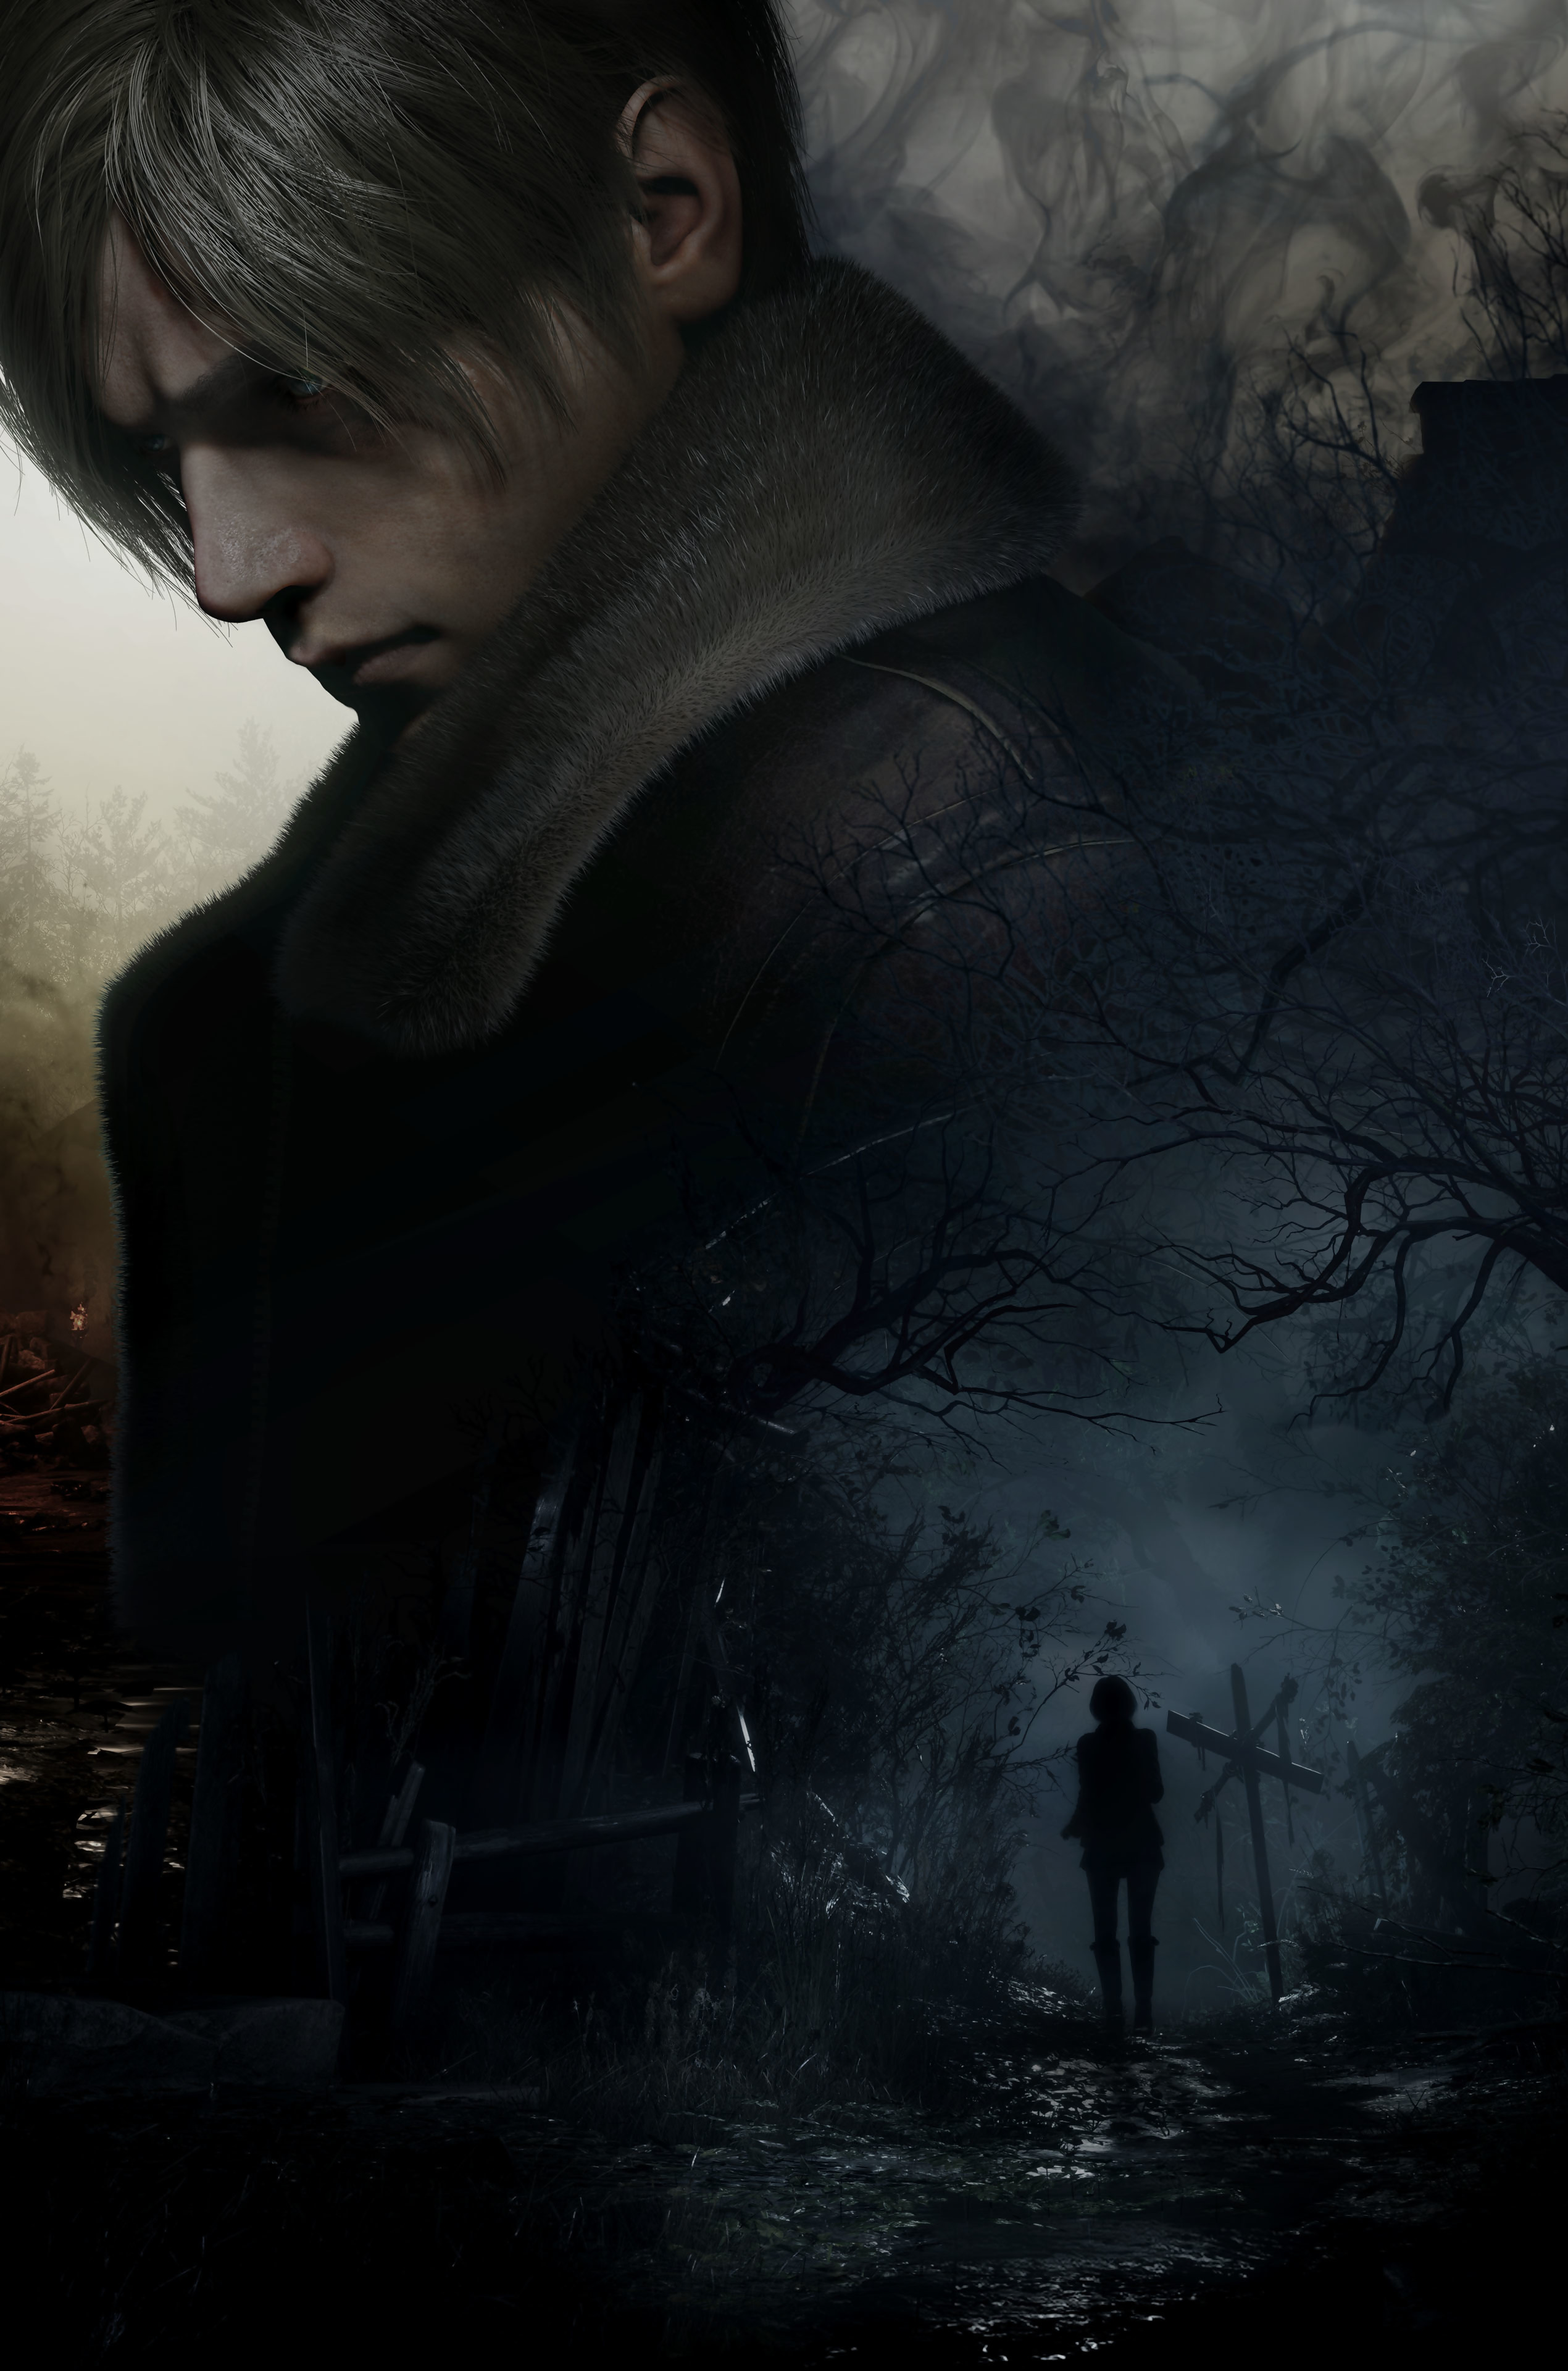 La sortie de Resident Evil 4 Remake où Leon et Ashley seront plongés dans les ténèbres.